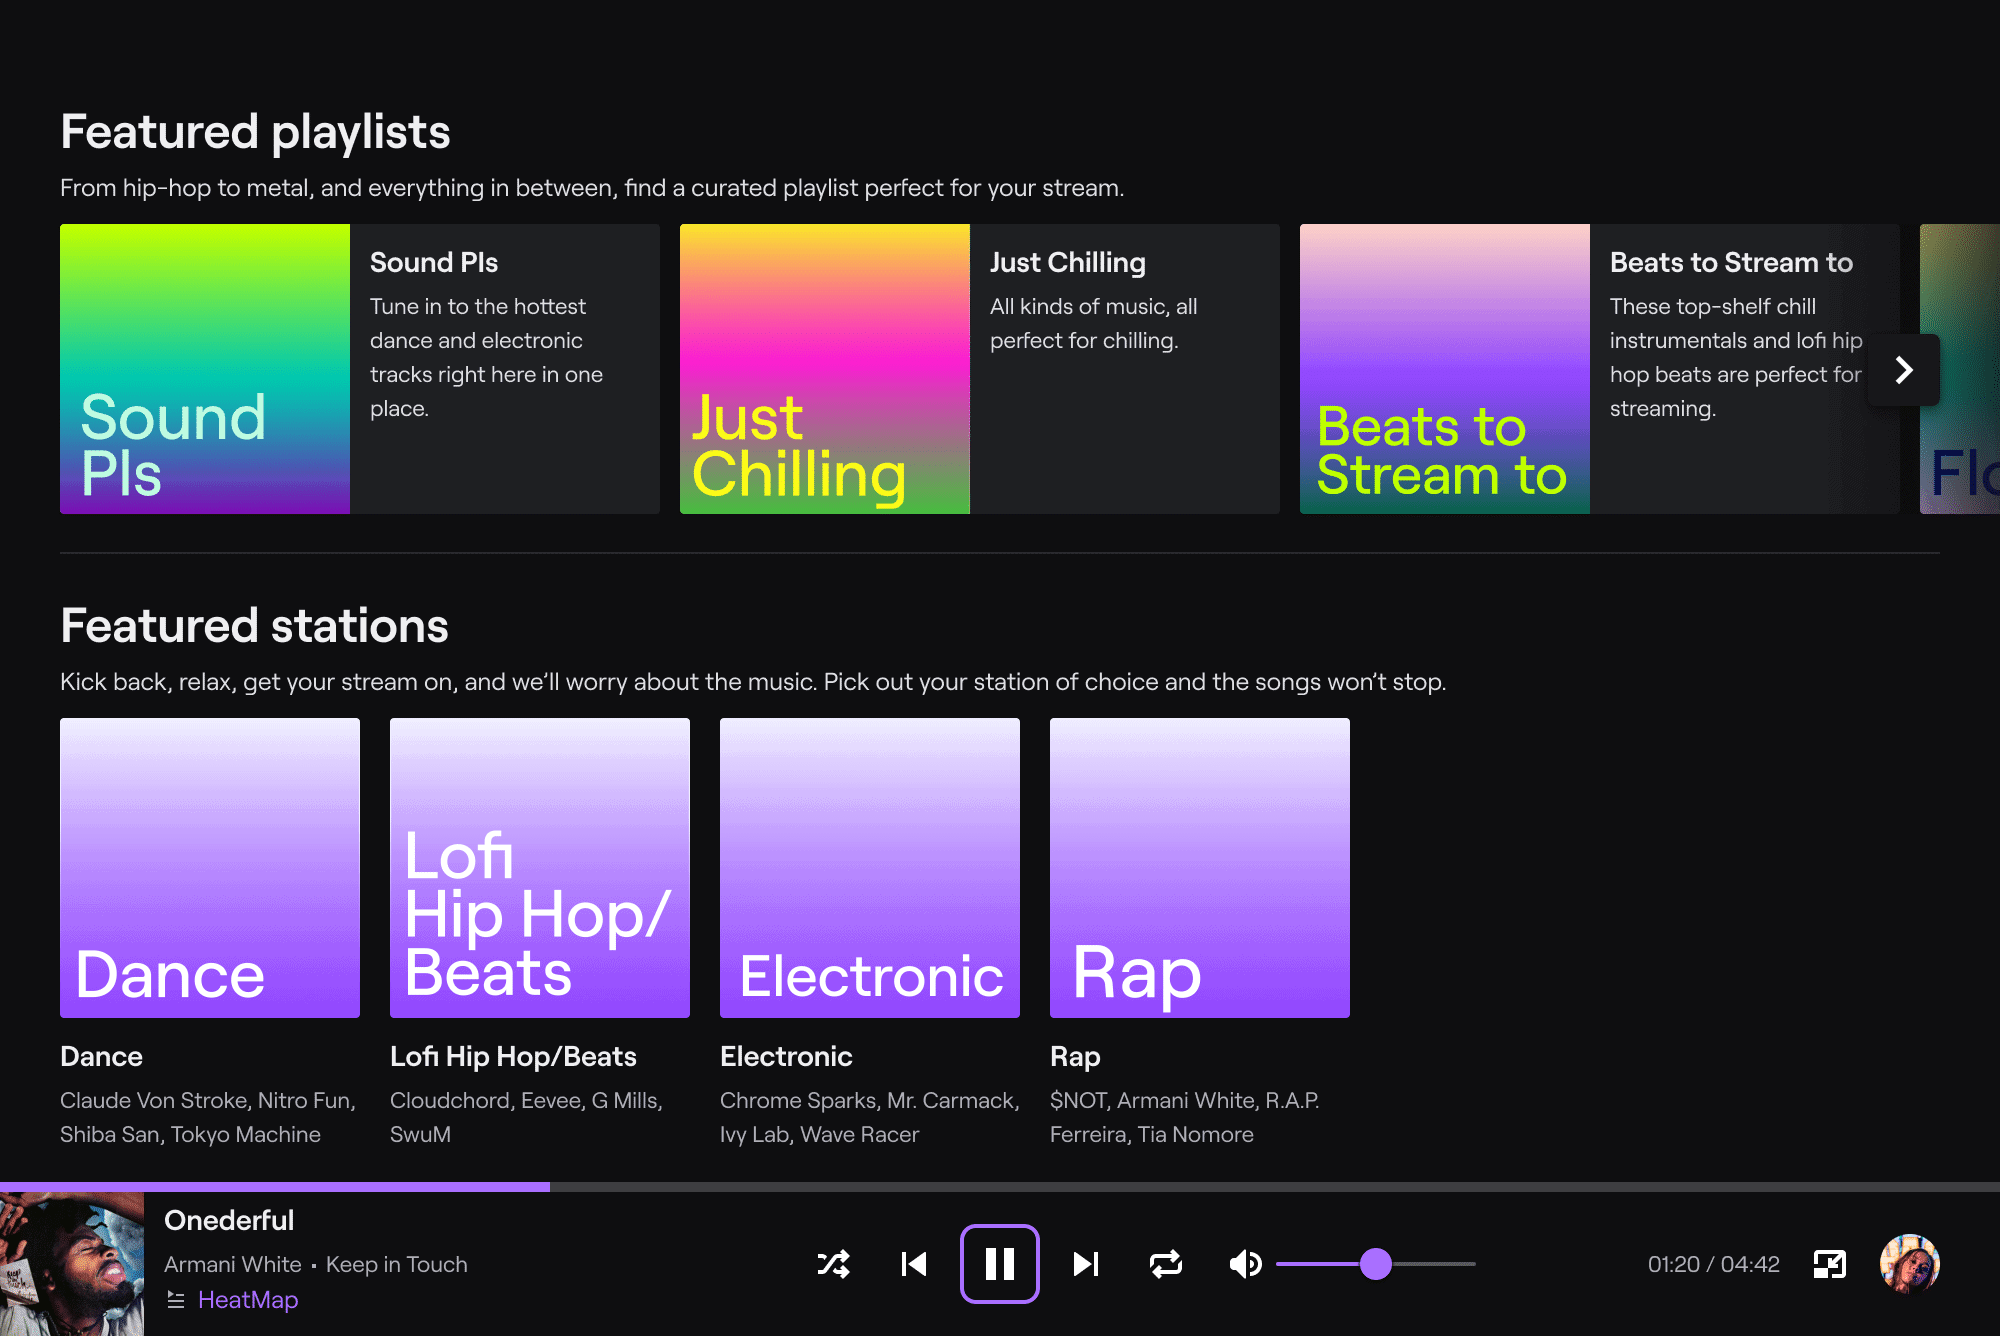 Aplicativo Twitch Soundtrack permite que streamers reproduzam música de fundo sem receber um aviso de direitos autorais